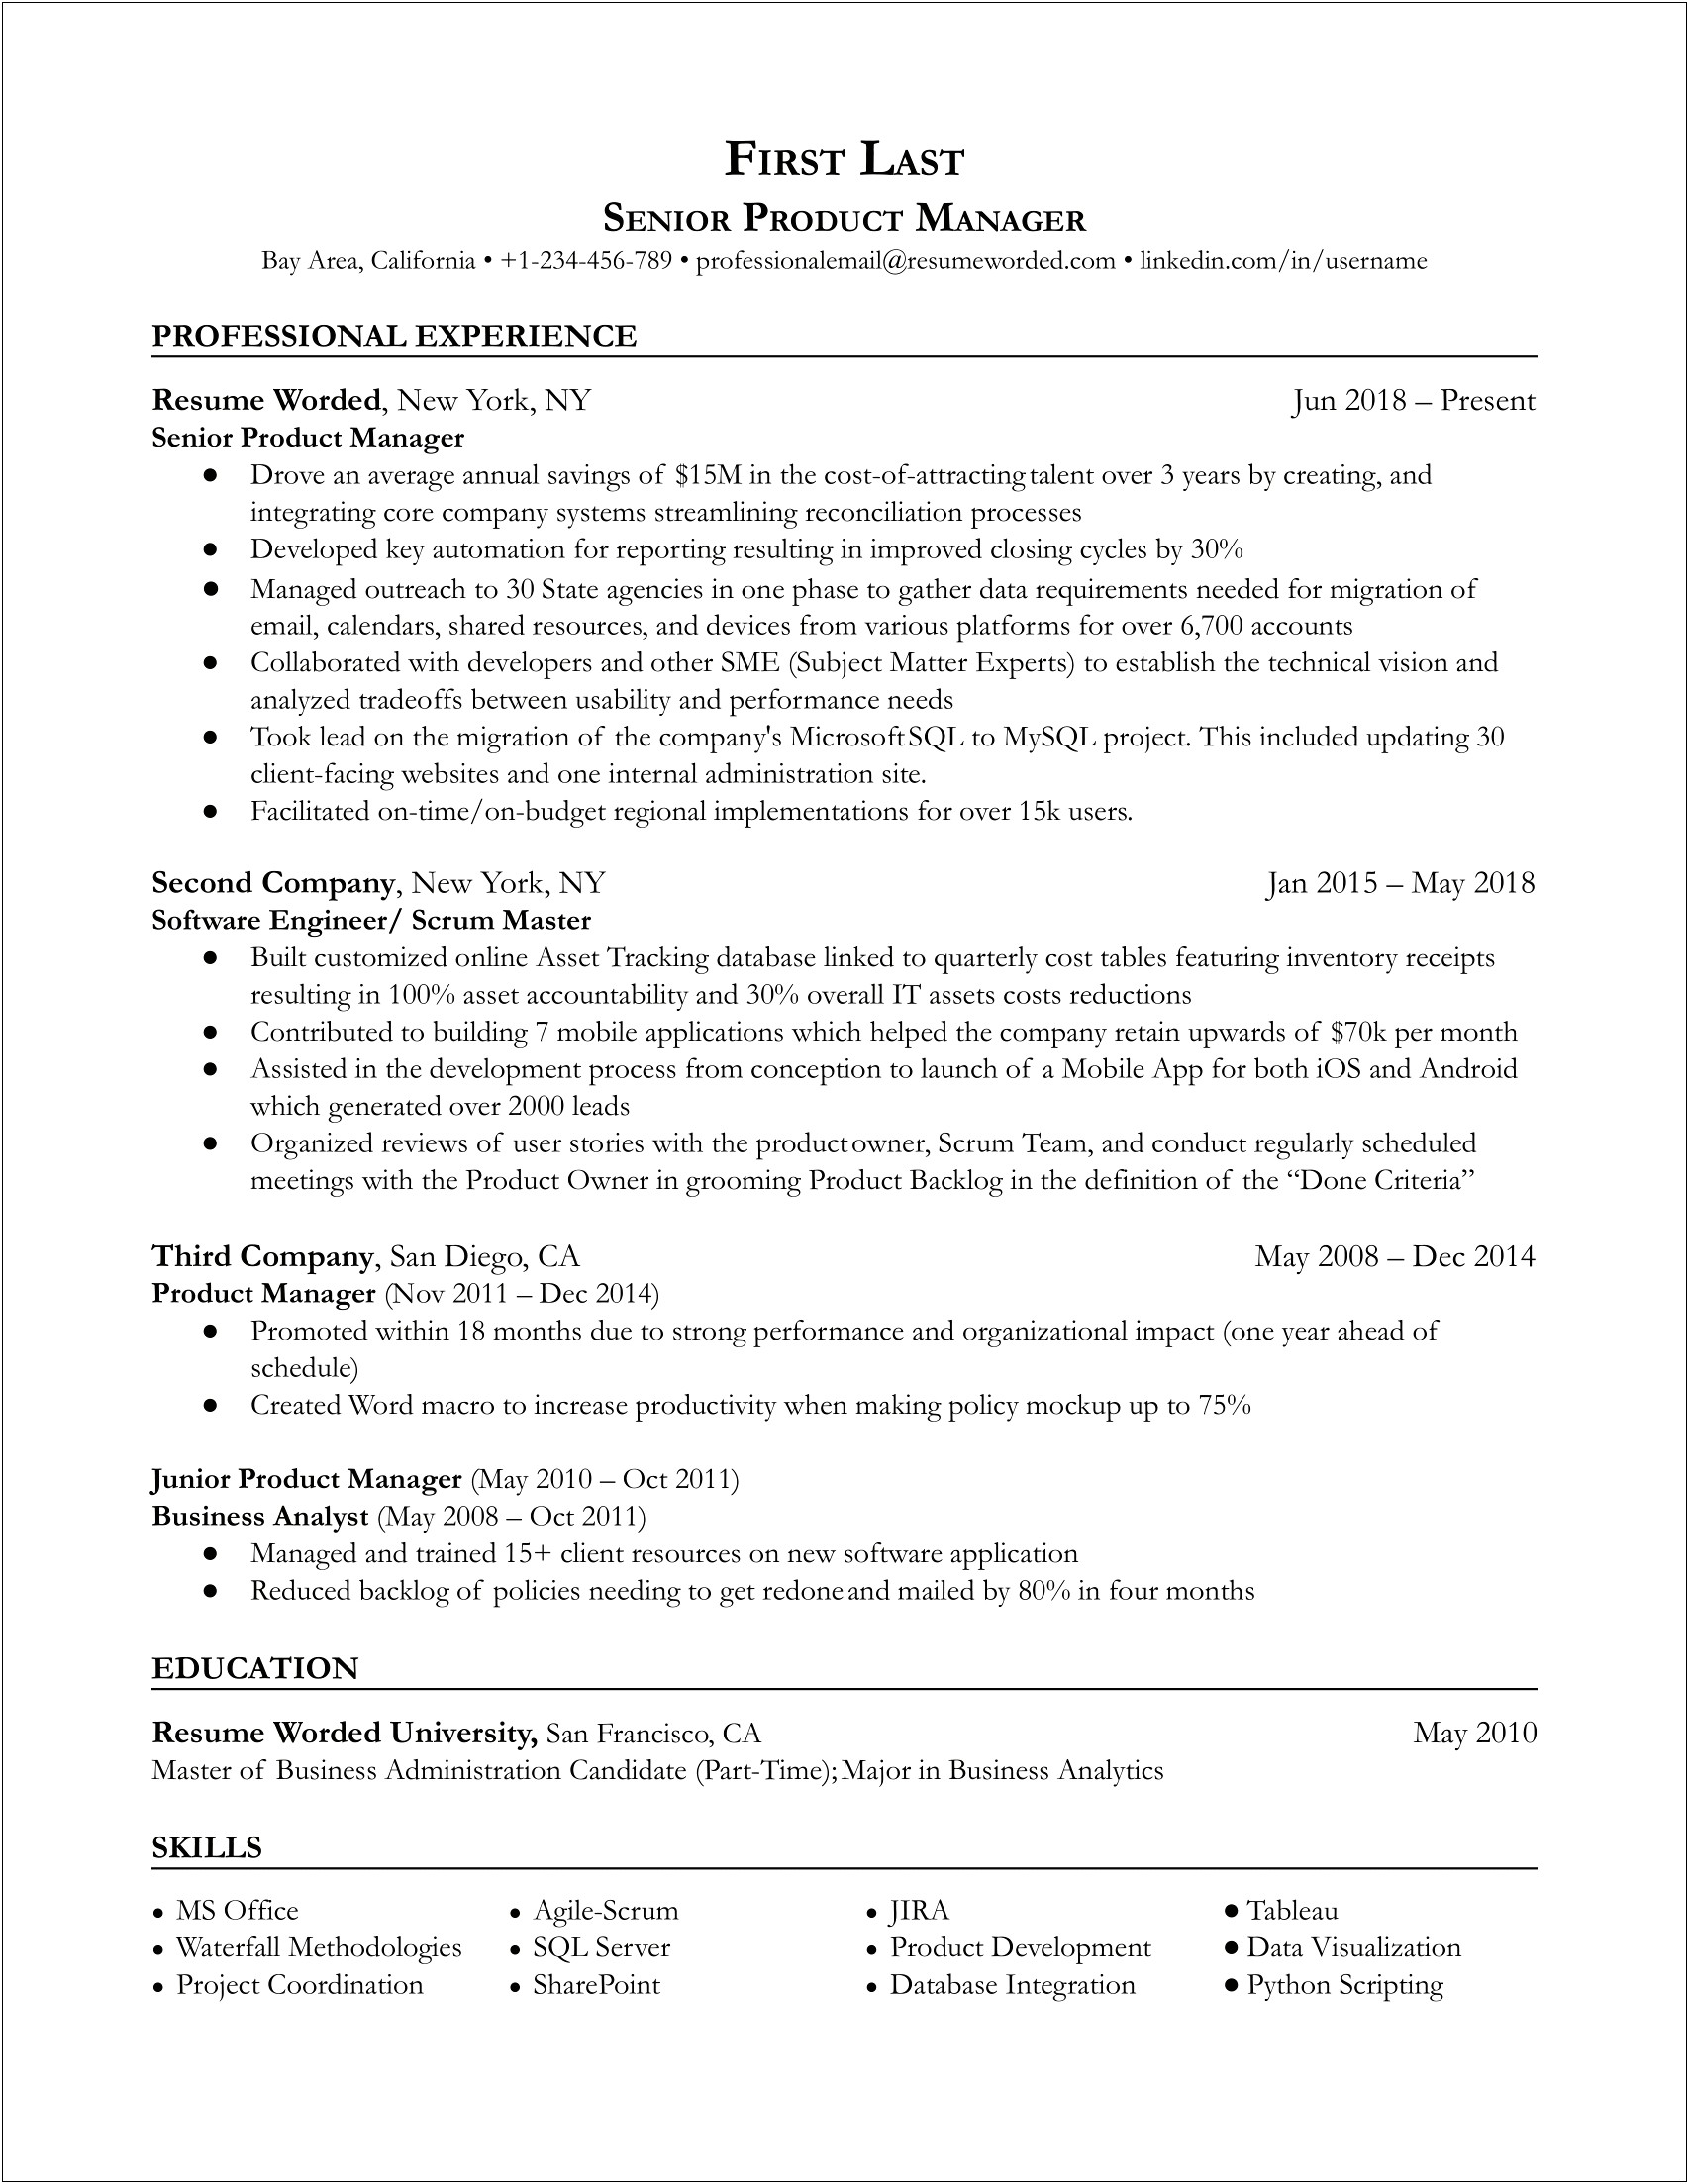 Senior Product Manager Resume Profile